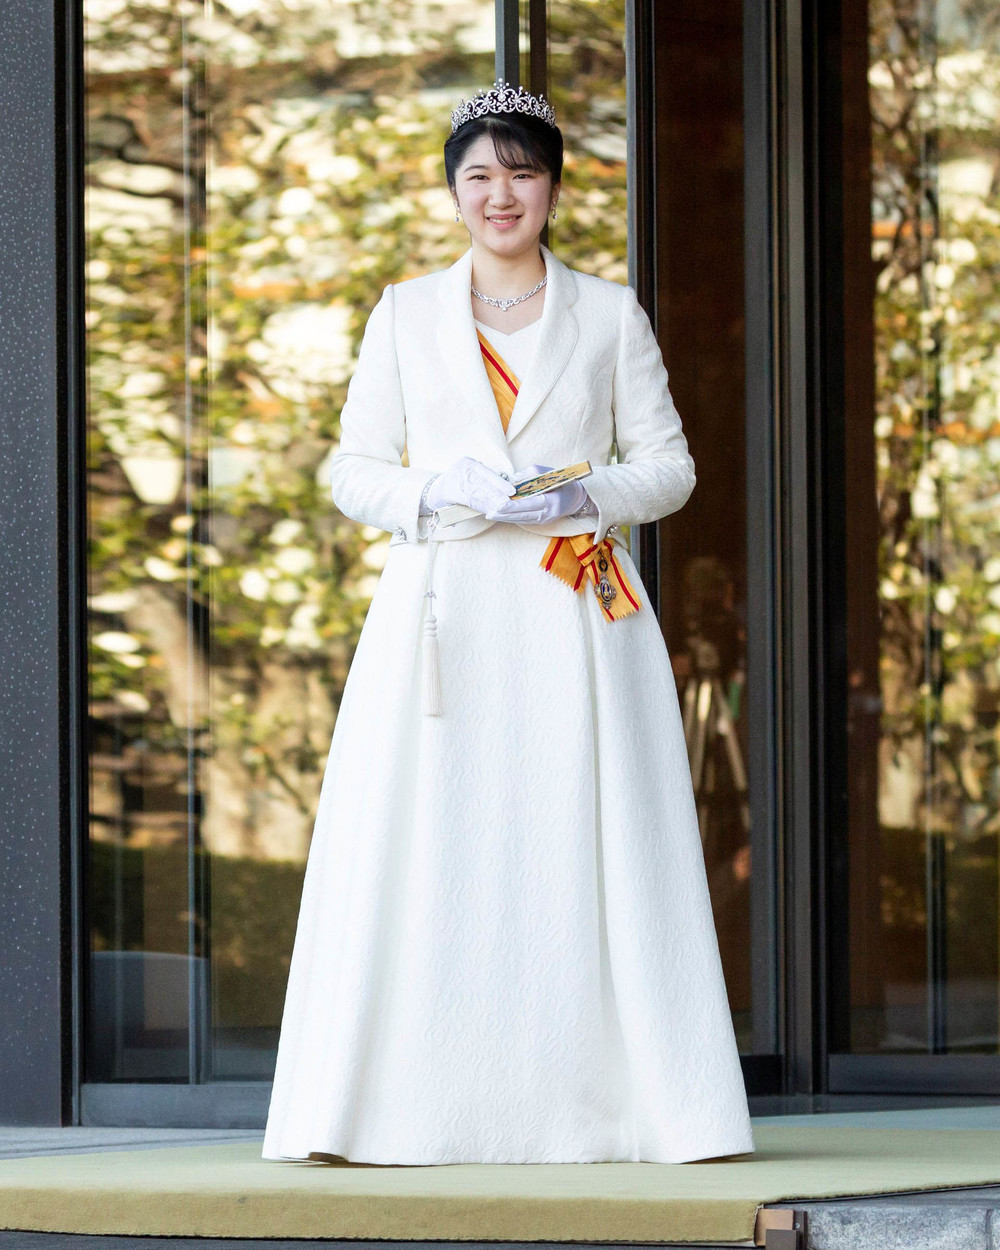  
Aiko được khen ngợi khi diện bộ trang phục khá tinh tế trong ngày lễ trưởng thành. (Ảnh: AP)